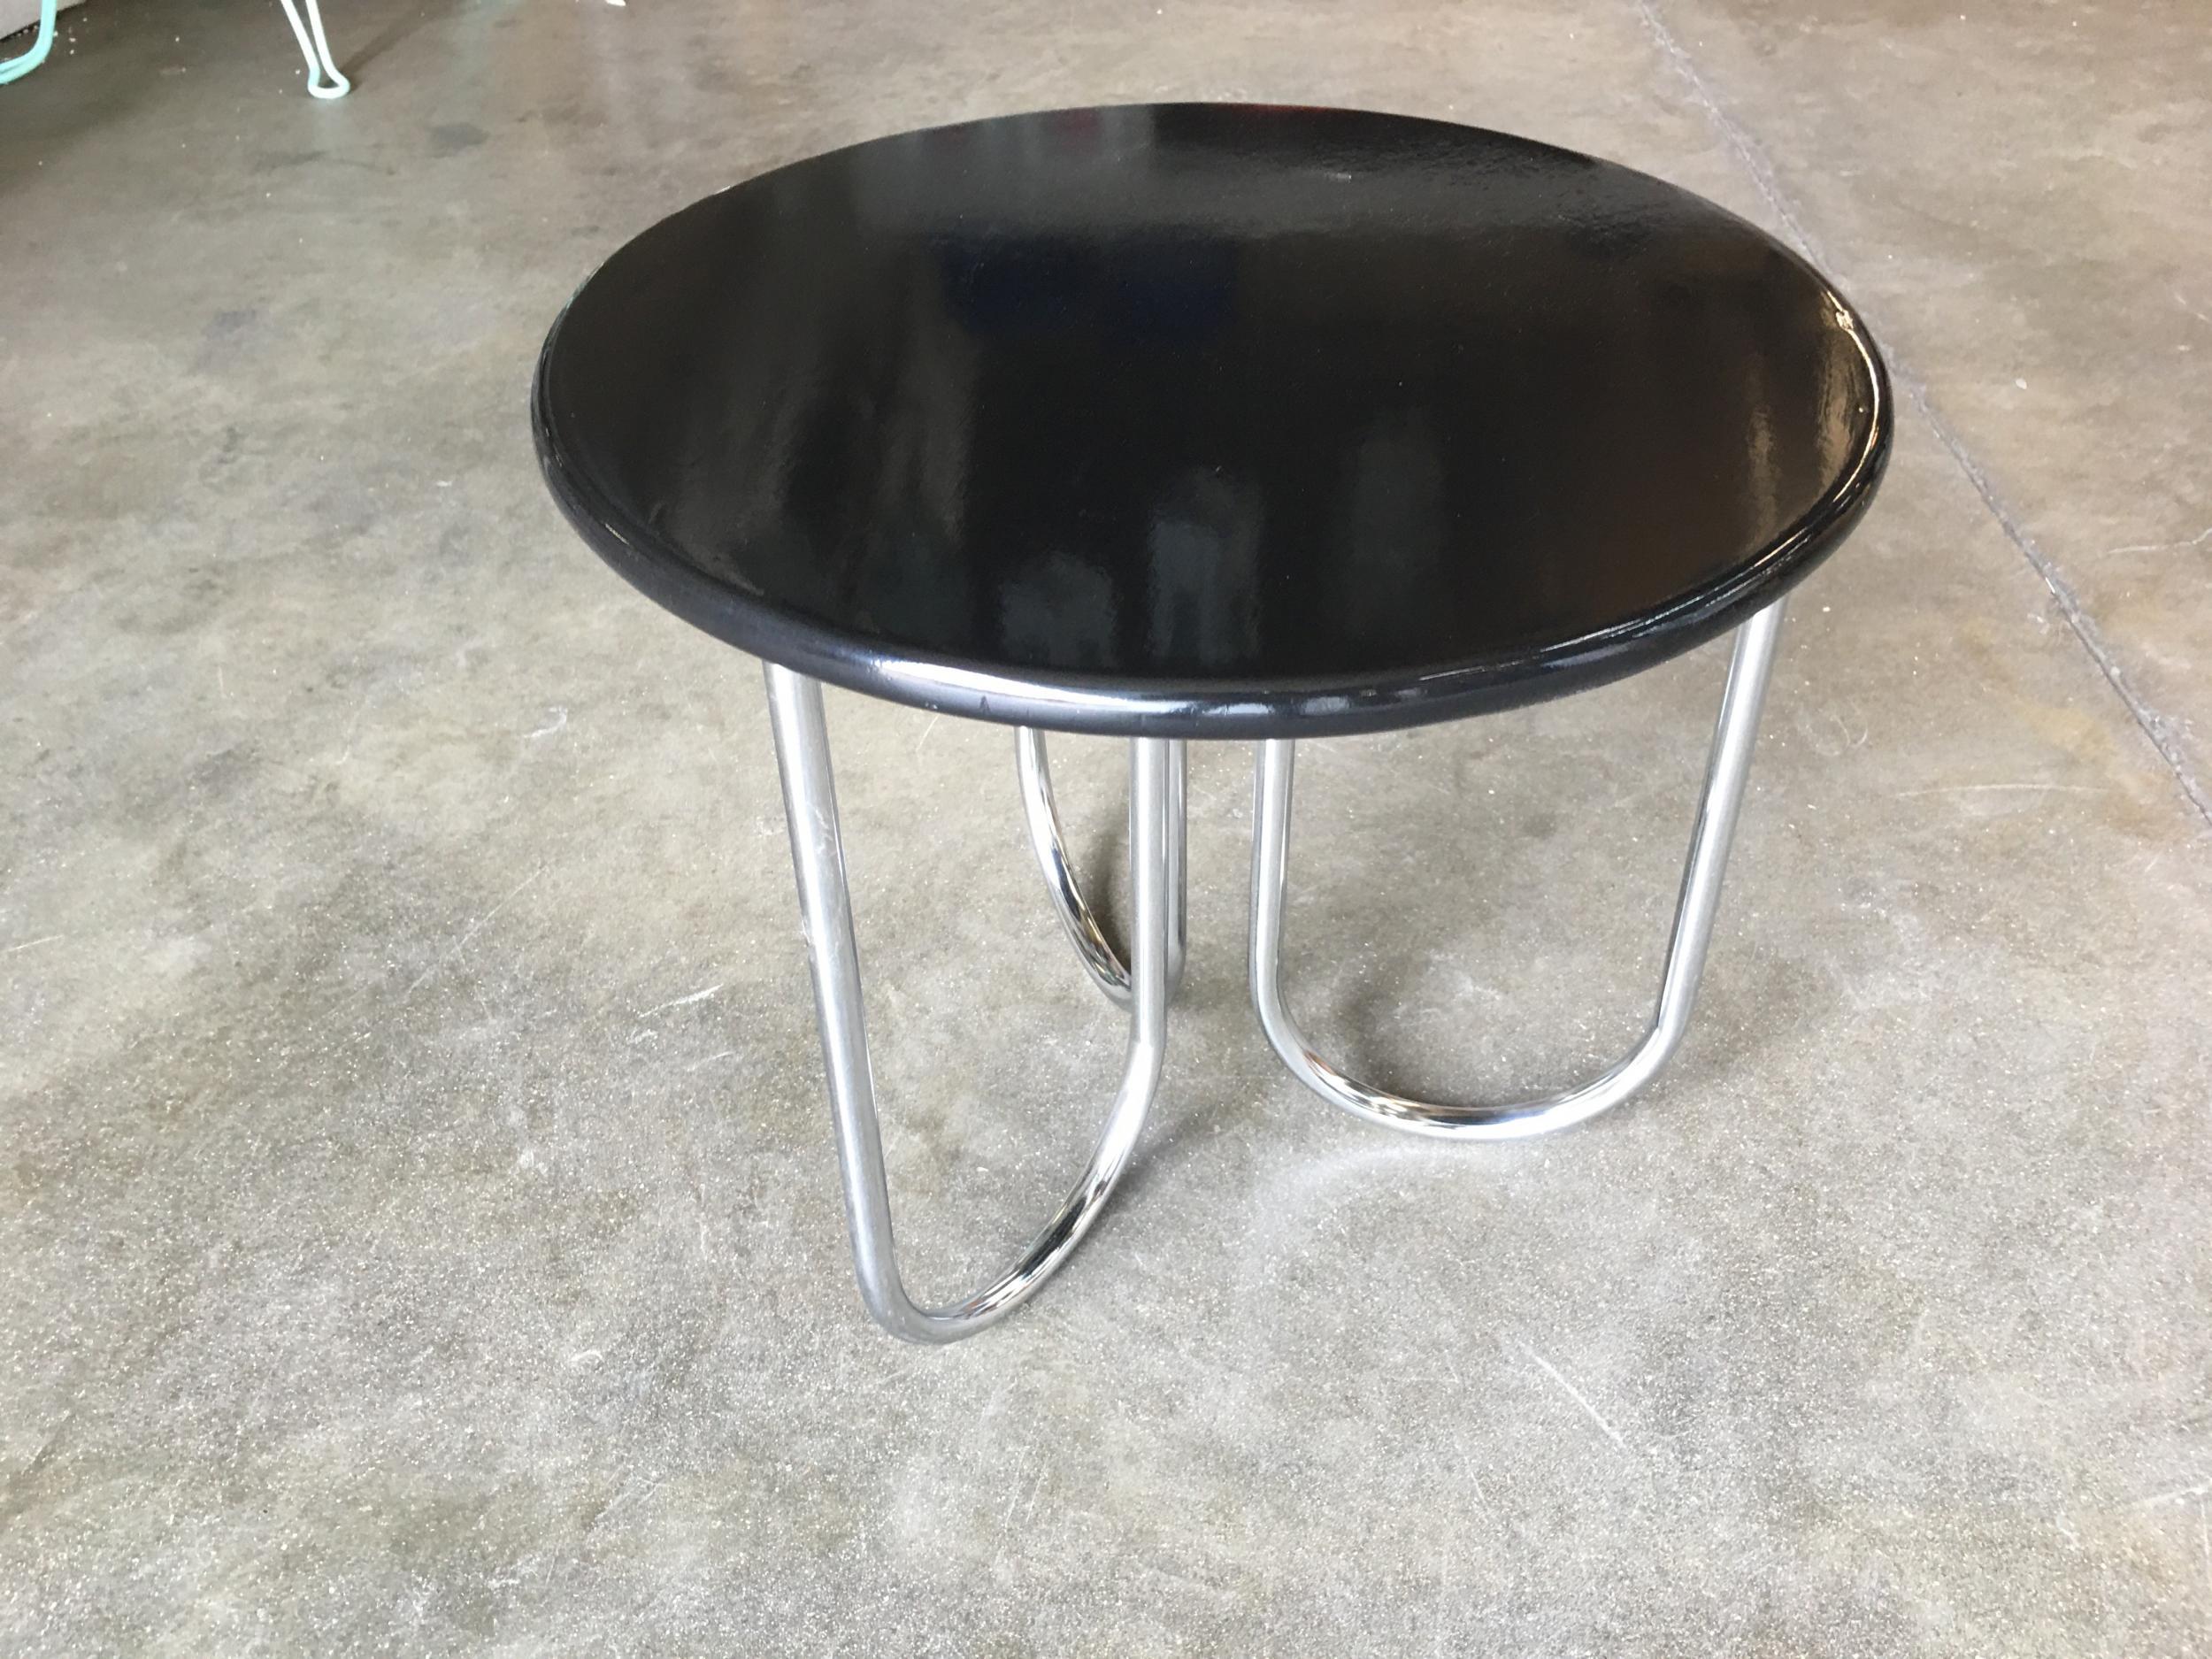 Table basse de style Art Déco, fabriquée par Royal Chrome. La table est dotée de pieds tubulaires chromés en forme de U et d'un plateau élégant en laque noire.